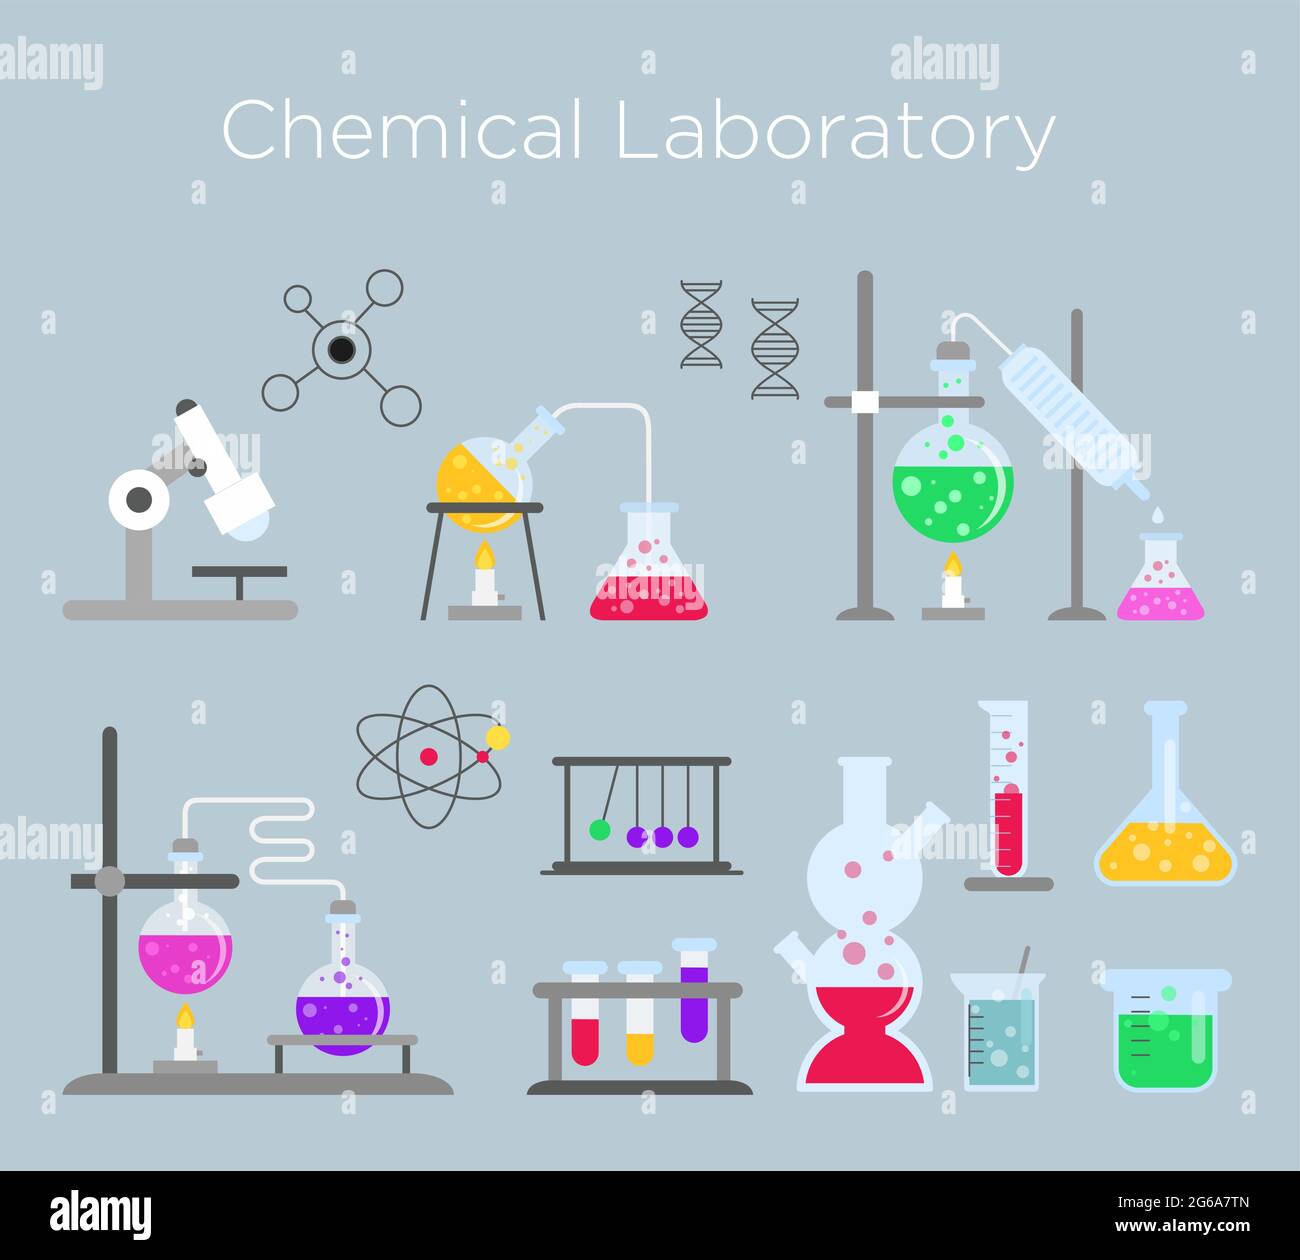 Vektor-Illustration Satz von chemischen Laborgeräten. Chemisches Glas mit verschiedenen chemischen Lösungen und Reaktionen im flachen Cartoon-Stil. Stock Vektor